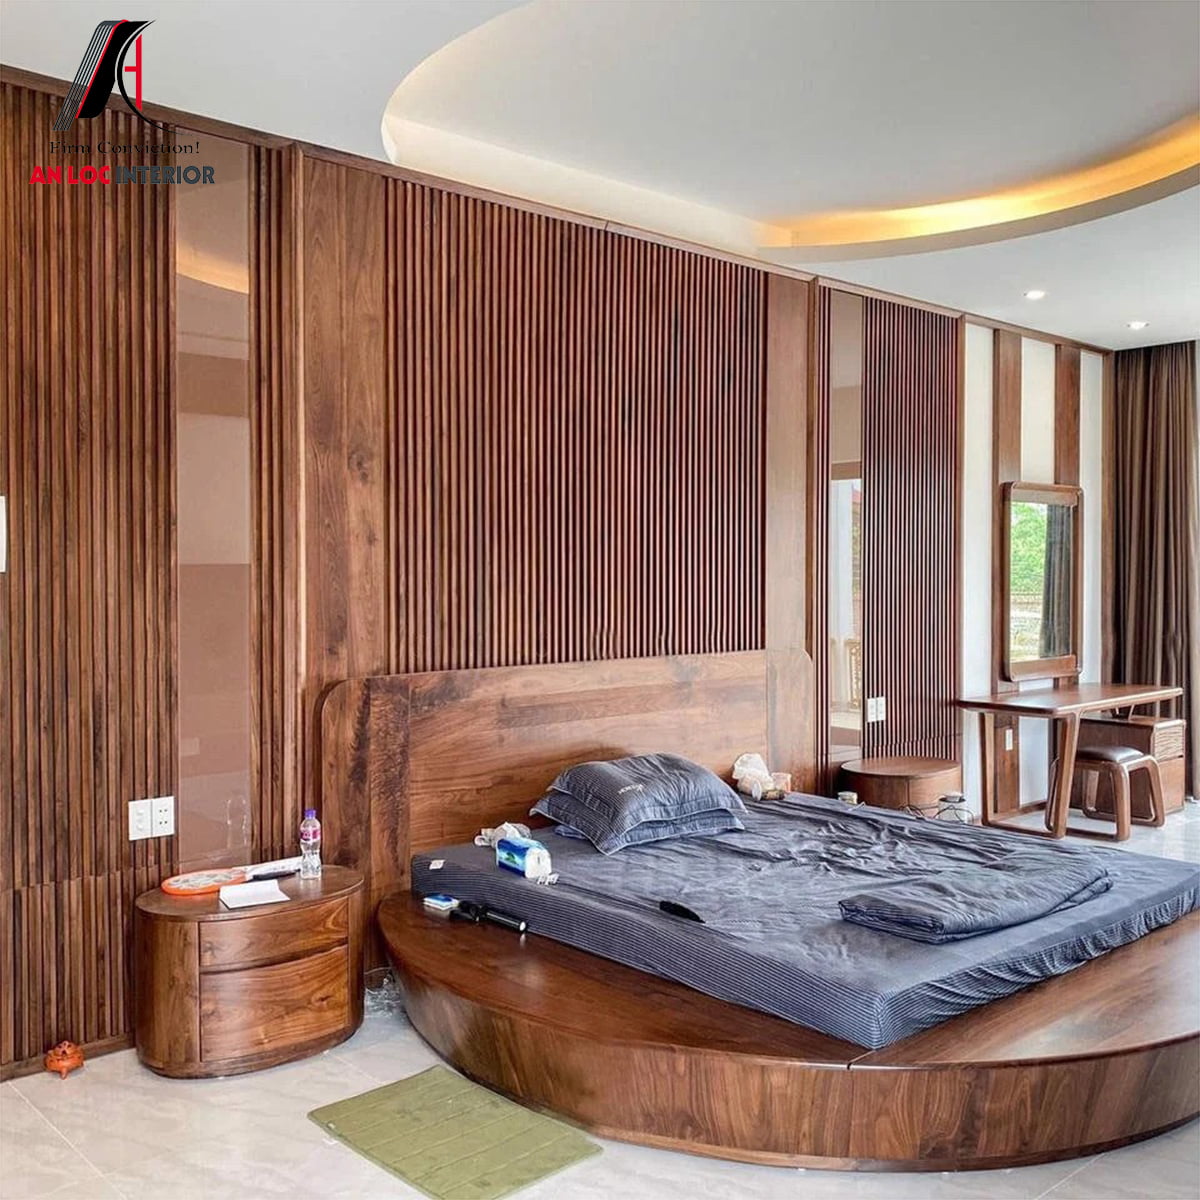 Mẫu 03: Giường gỗ hình tròn đồng bộ với chất liệu nội thất chính của căn phòng 